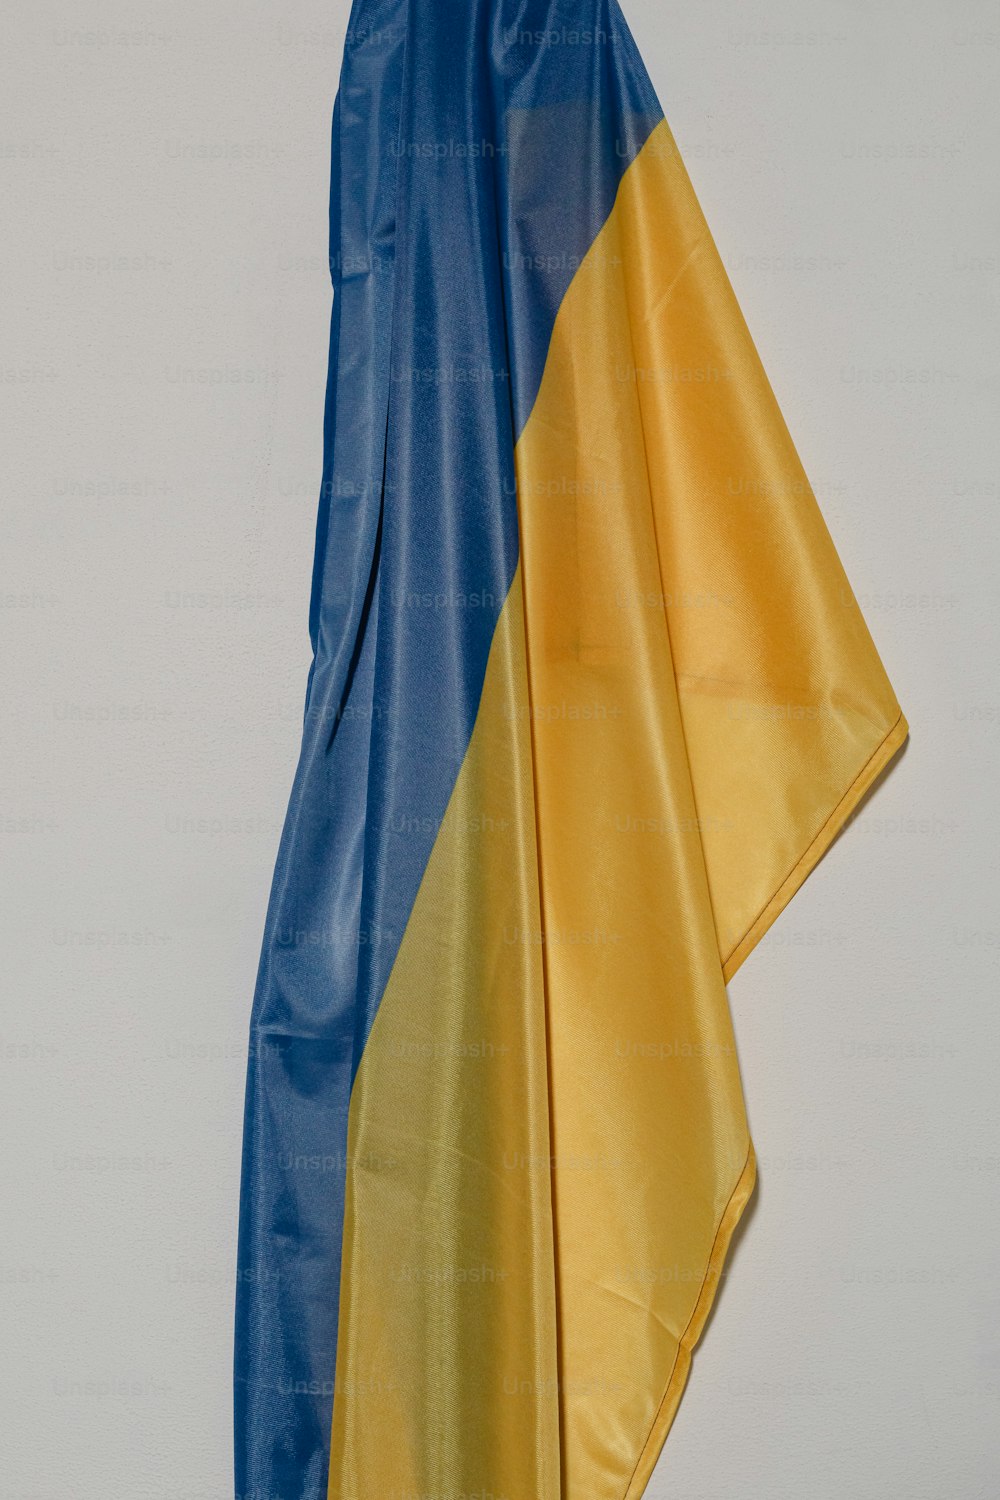 uma bandeira azul e amarela pendurada em uma parede